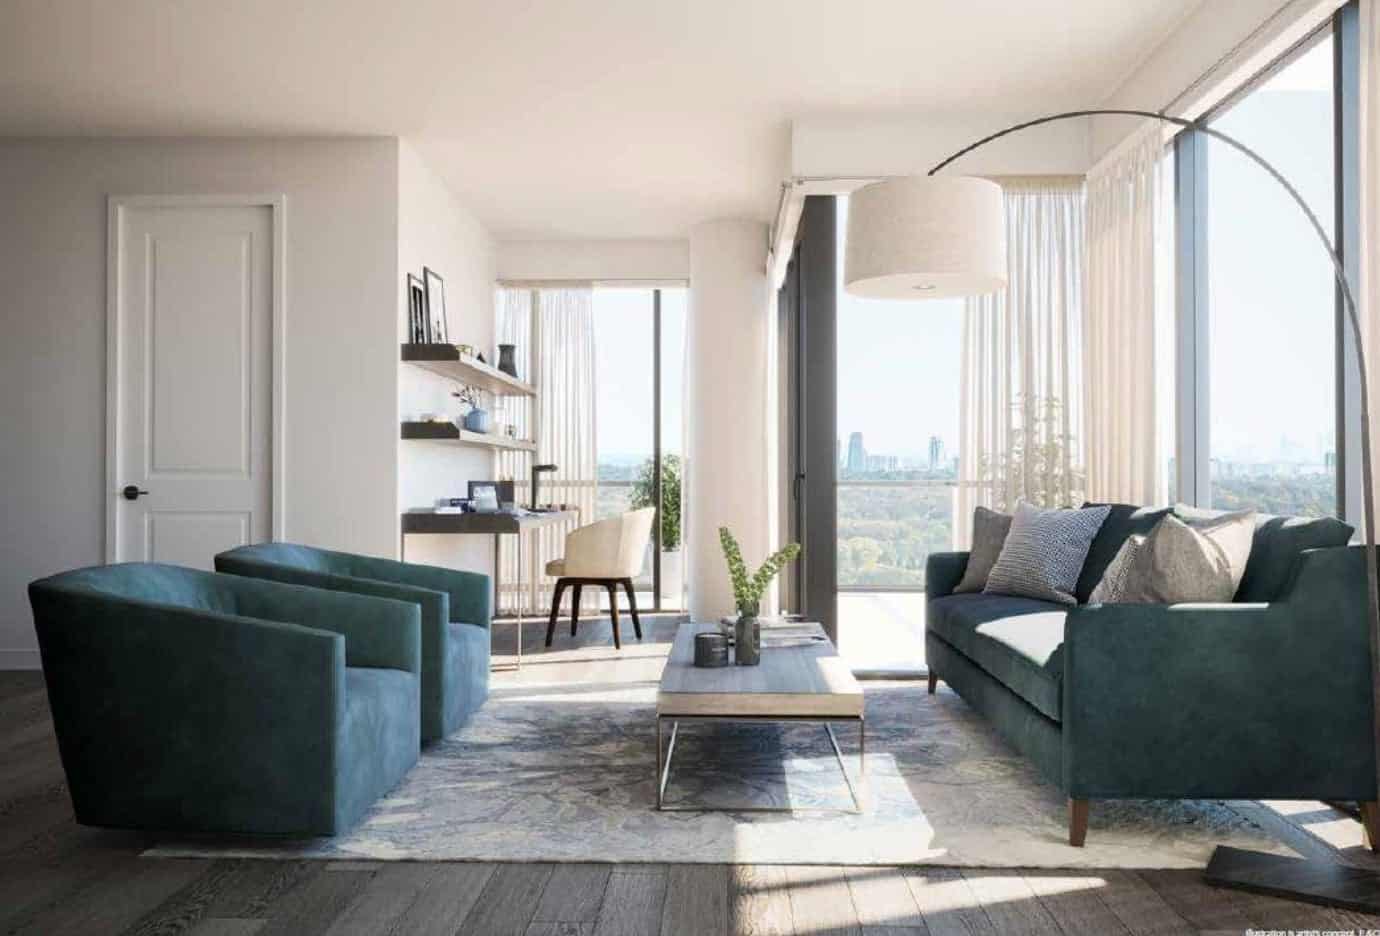 Notting Hill Condos Interior Living Room Rendering True Condos